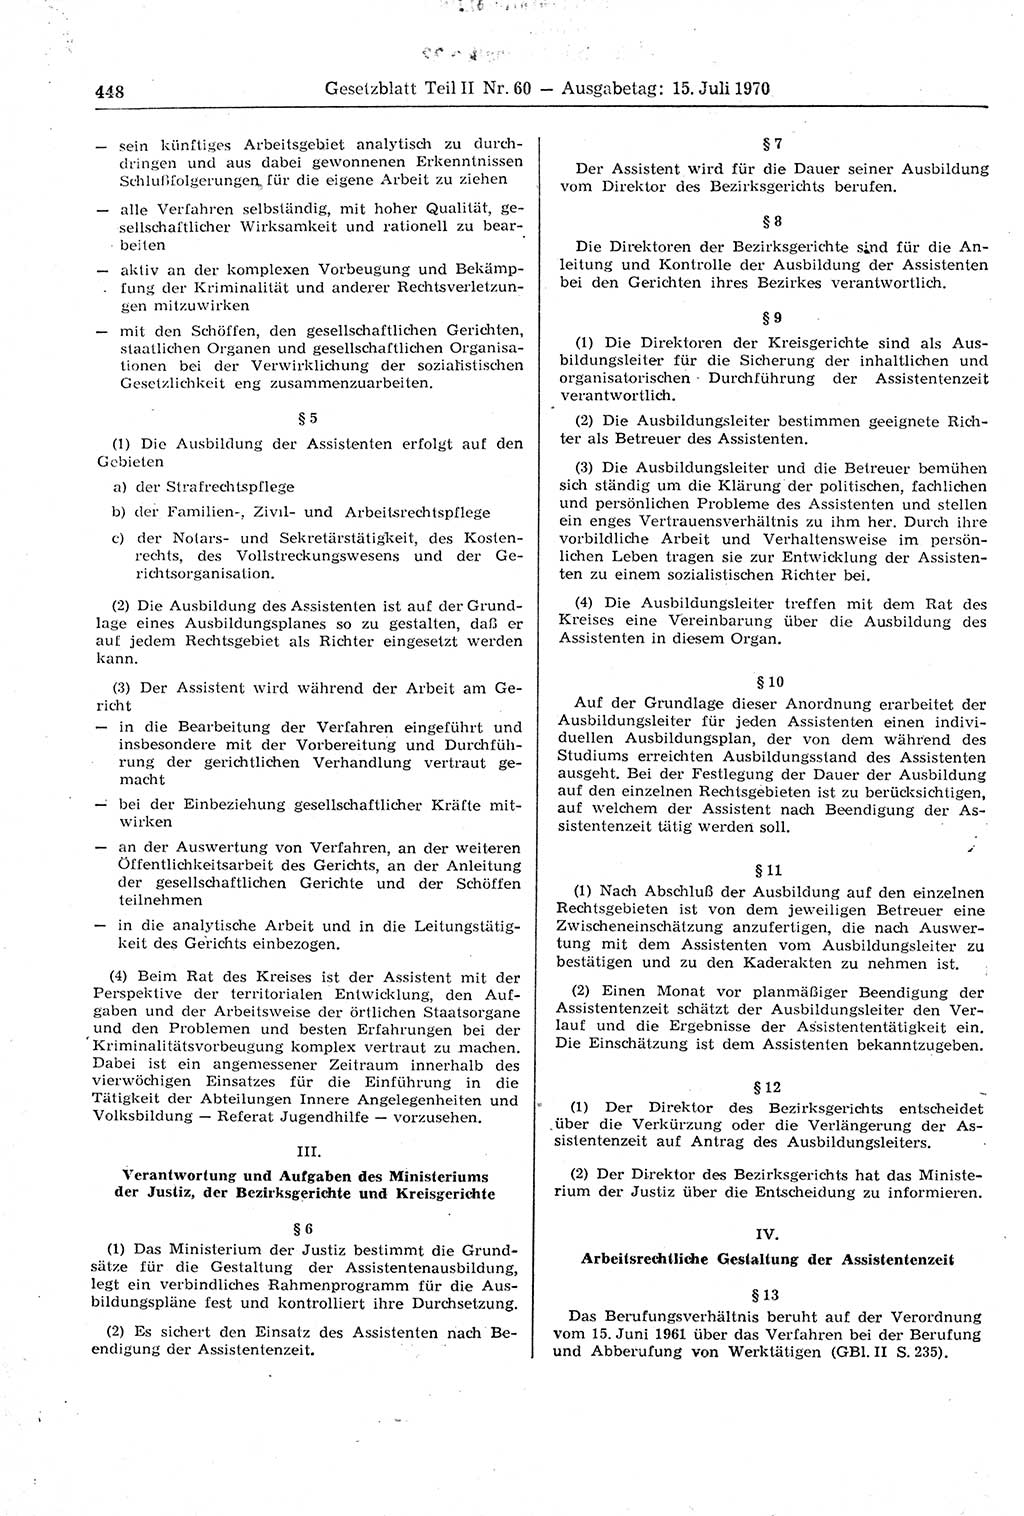 Gesetzblatt (GBl.) der Deutschen Demokratischen Republik (DDR) Teil ⅠⅠ 1970, Seite 448 (GBl. DDR ⅠⅠ 1970, S. 448)